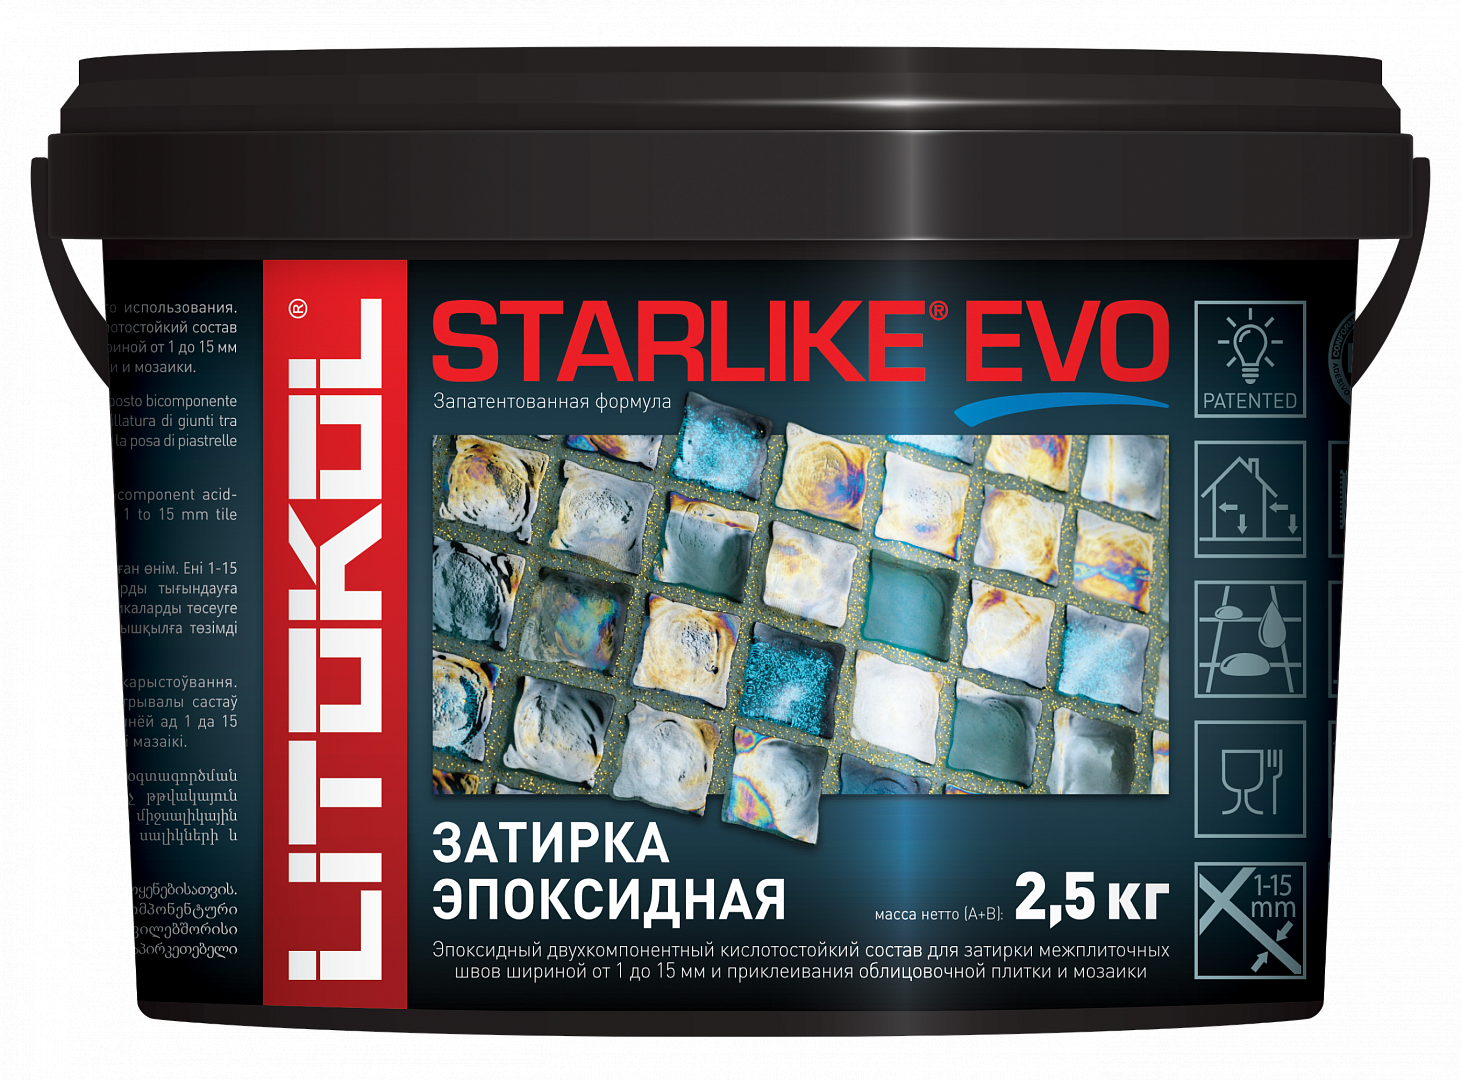  Starlike Evo Starlike Evo S.209 P.ASSISI 2.5 кг - фото 2